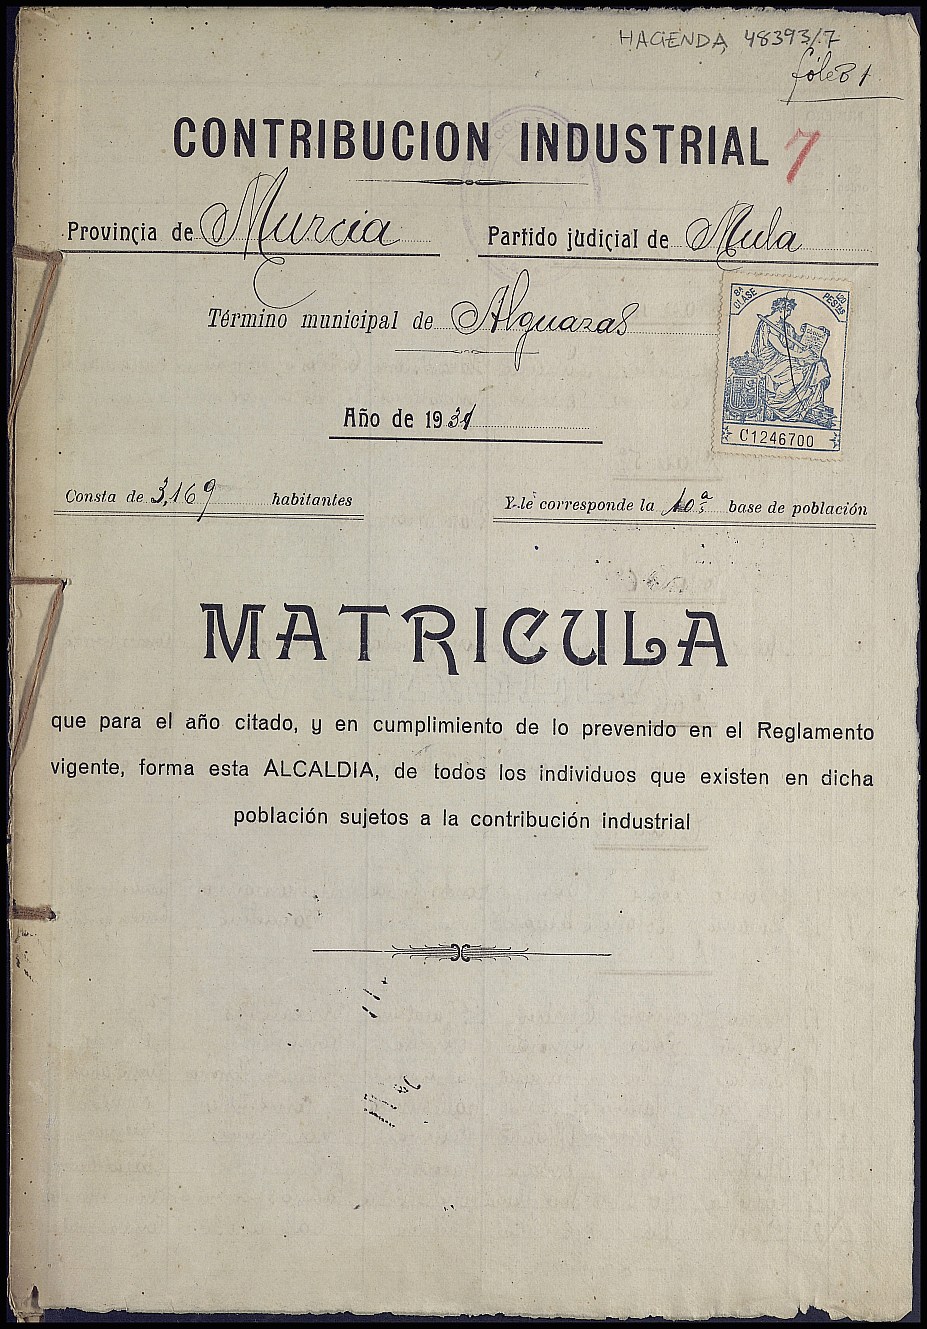 Matrícula de la contribución industrial de Alguazas. Año 1931.